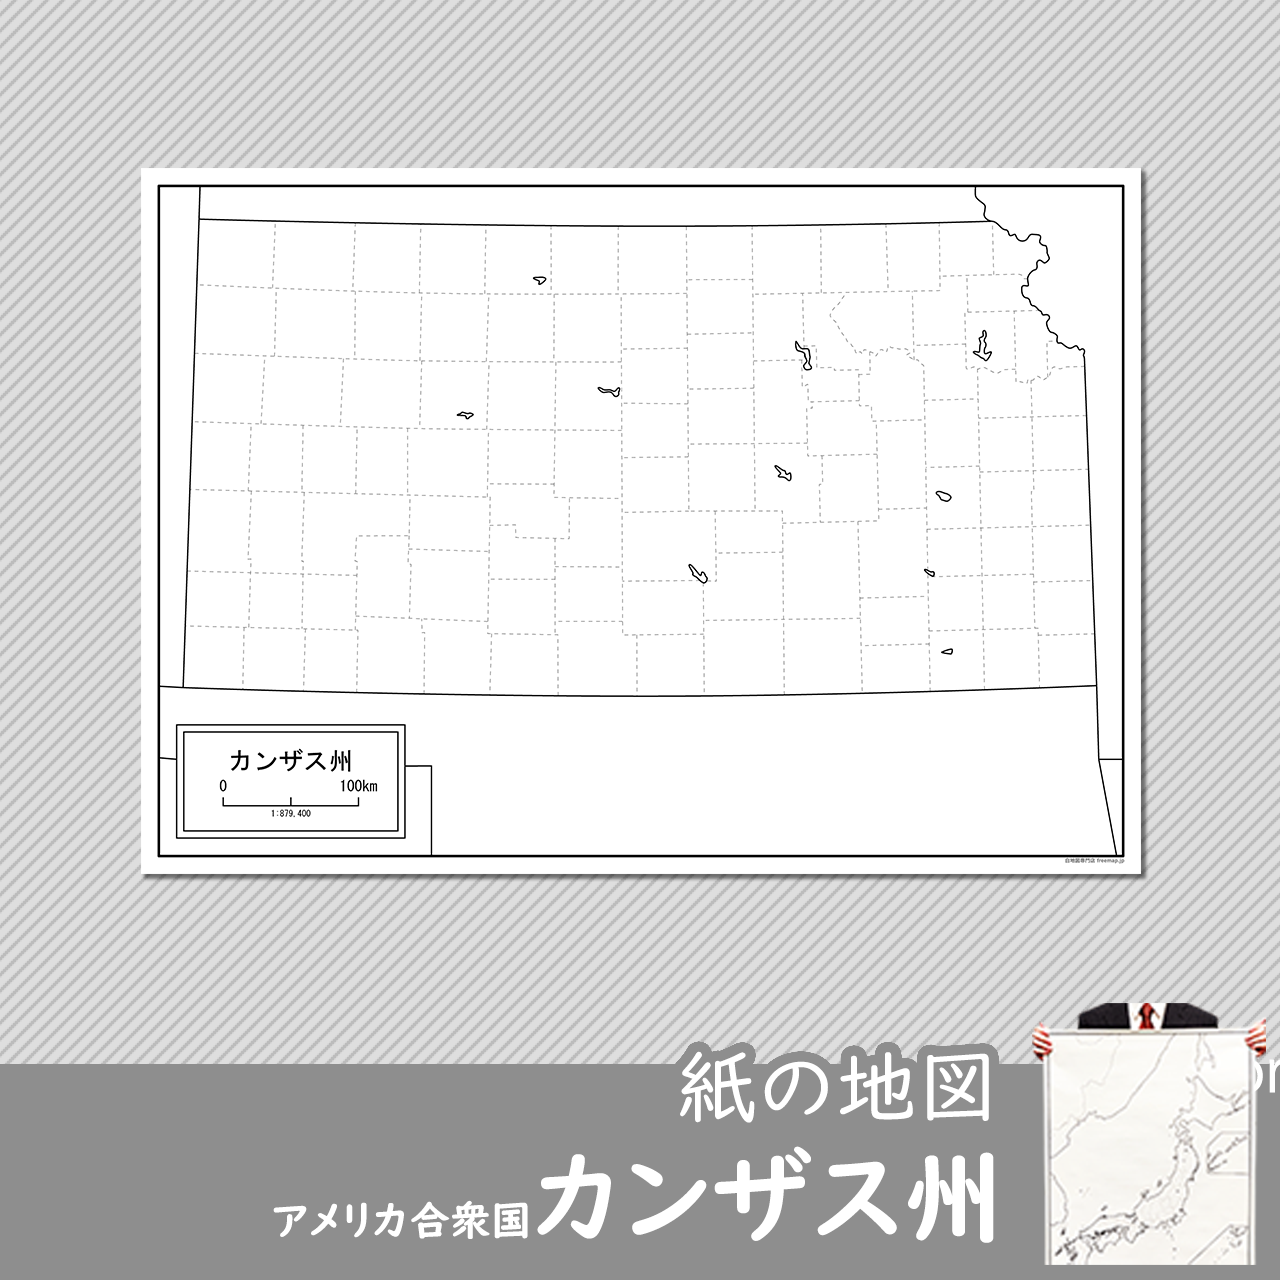 カンザス州の紙の白地図のサムネイル